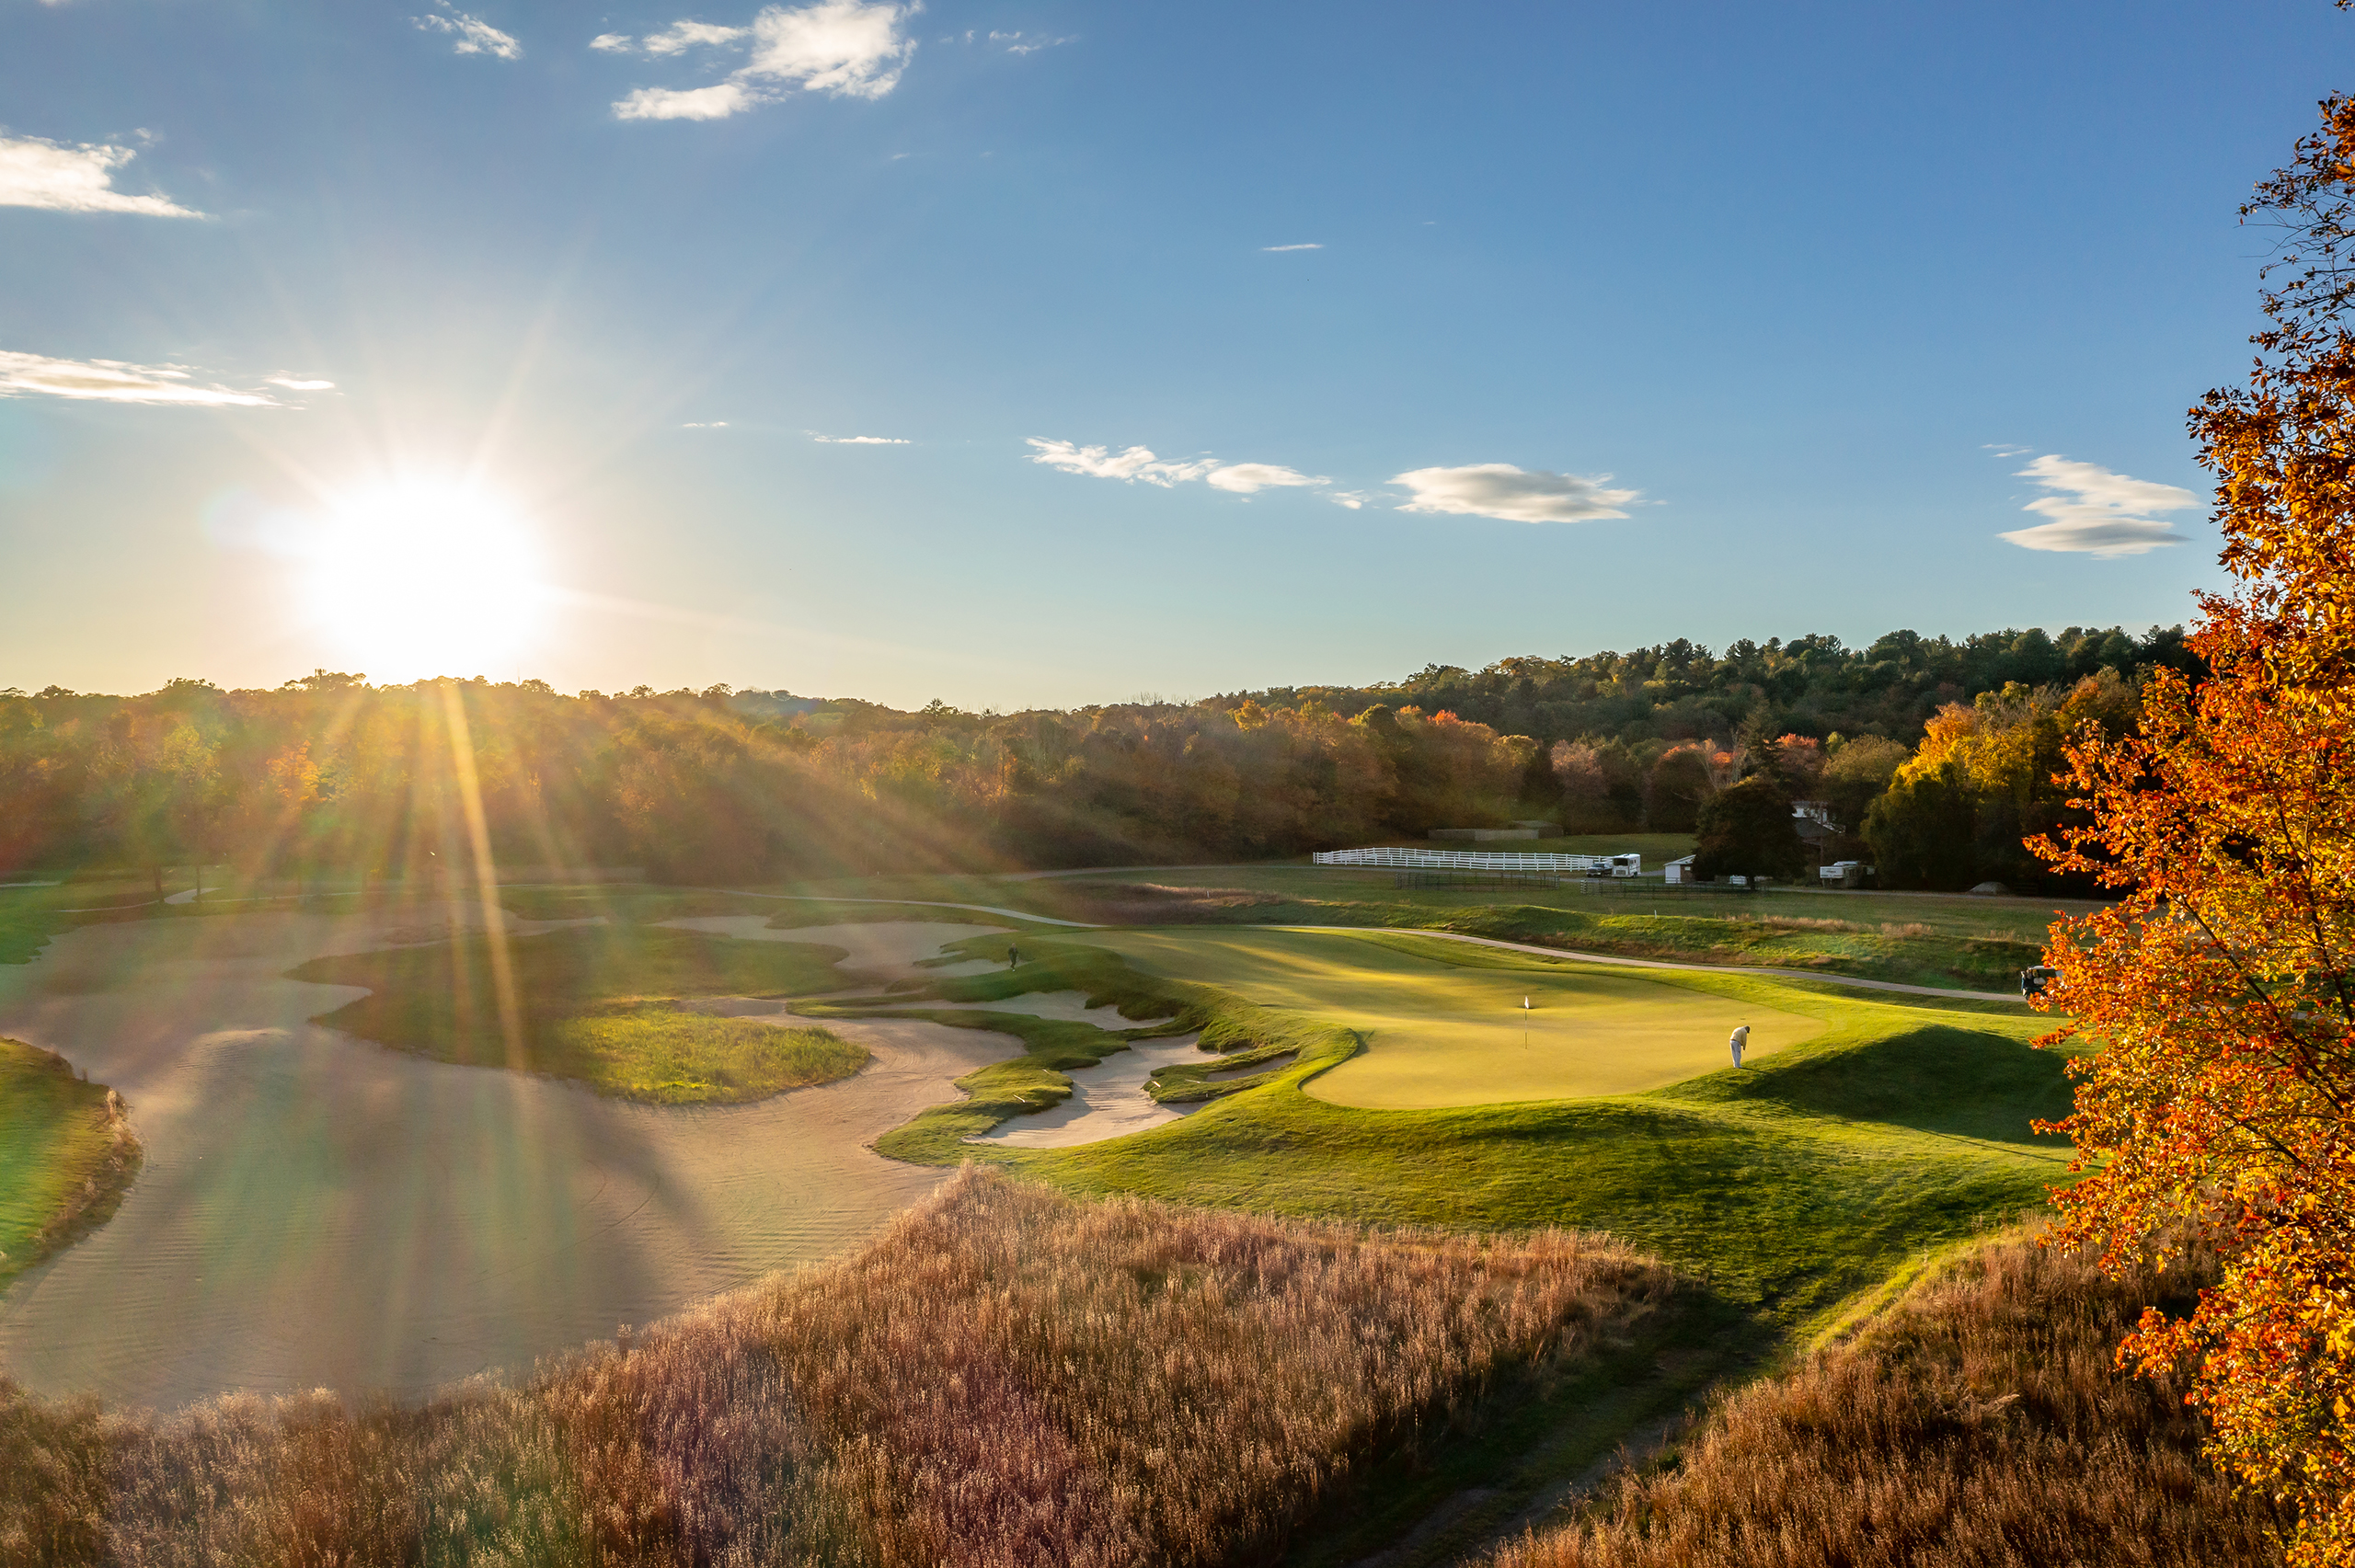 Renaissance Golf course landscape image